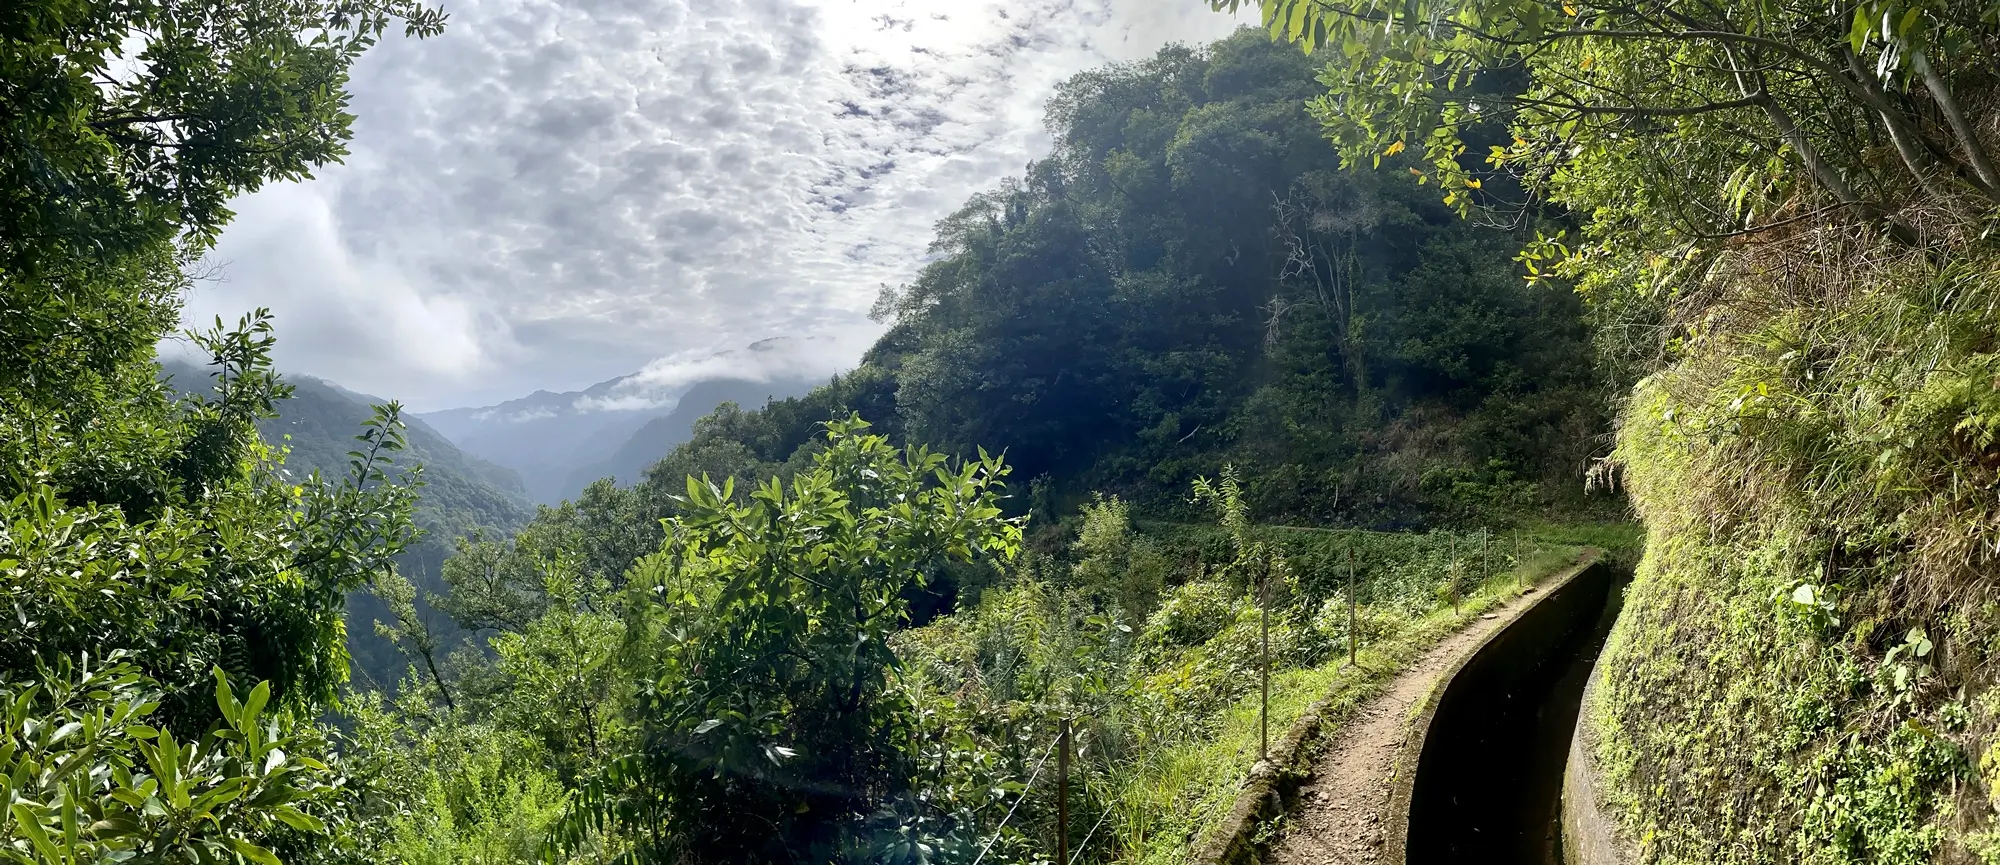 Ausgangspunkt der Levada da Ribera da Janela Wanderung: Hütte am Bewässerungskanal